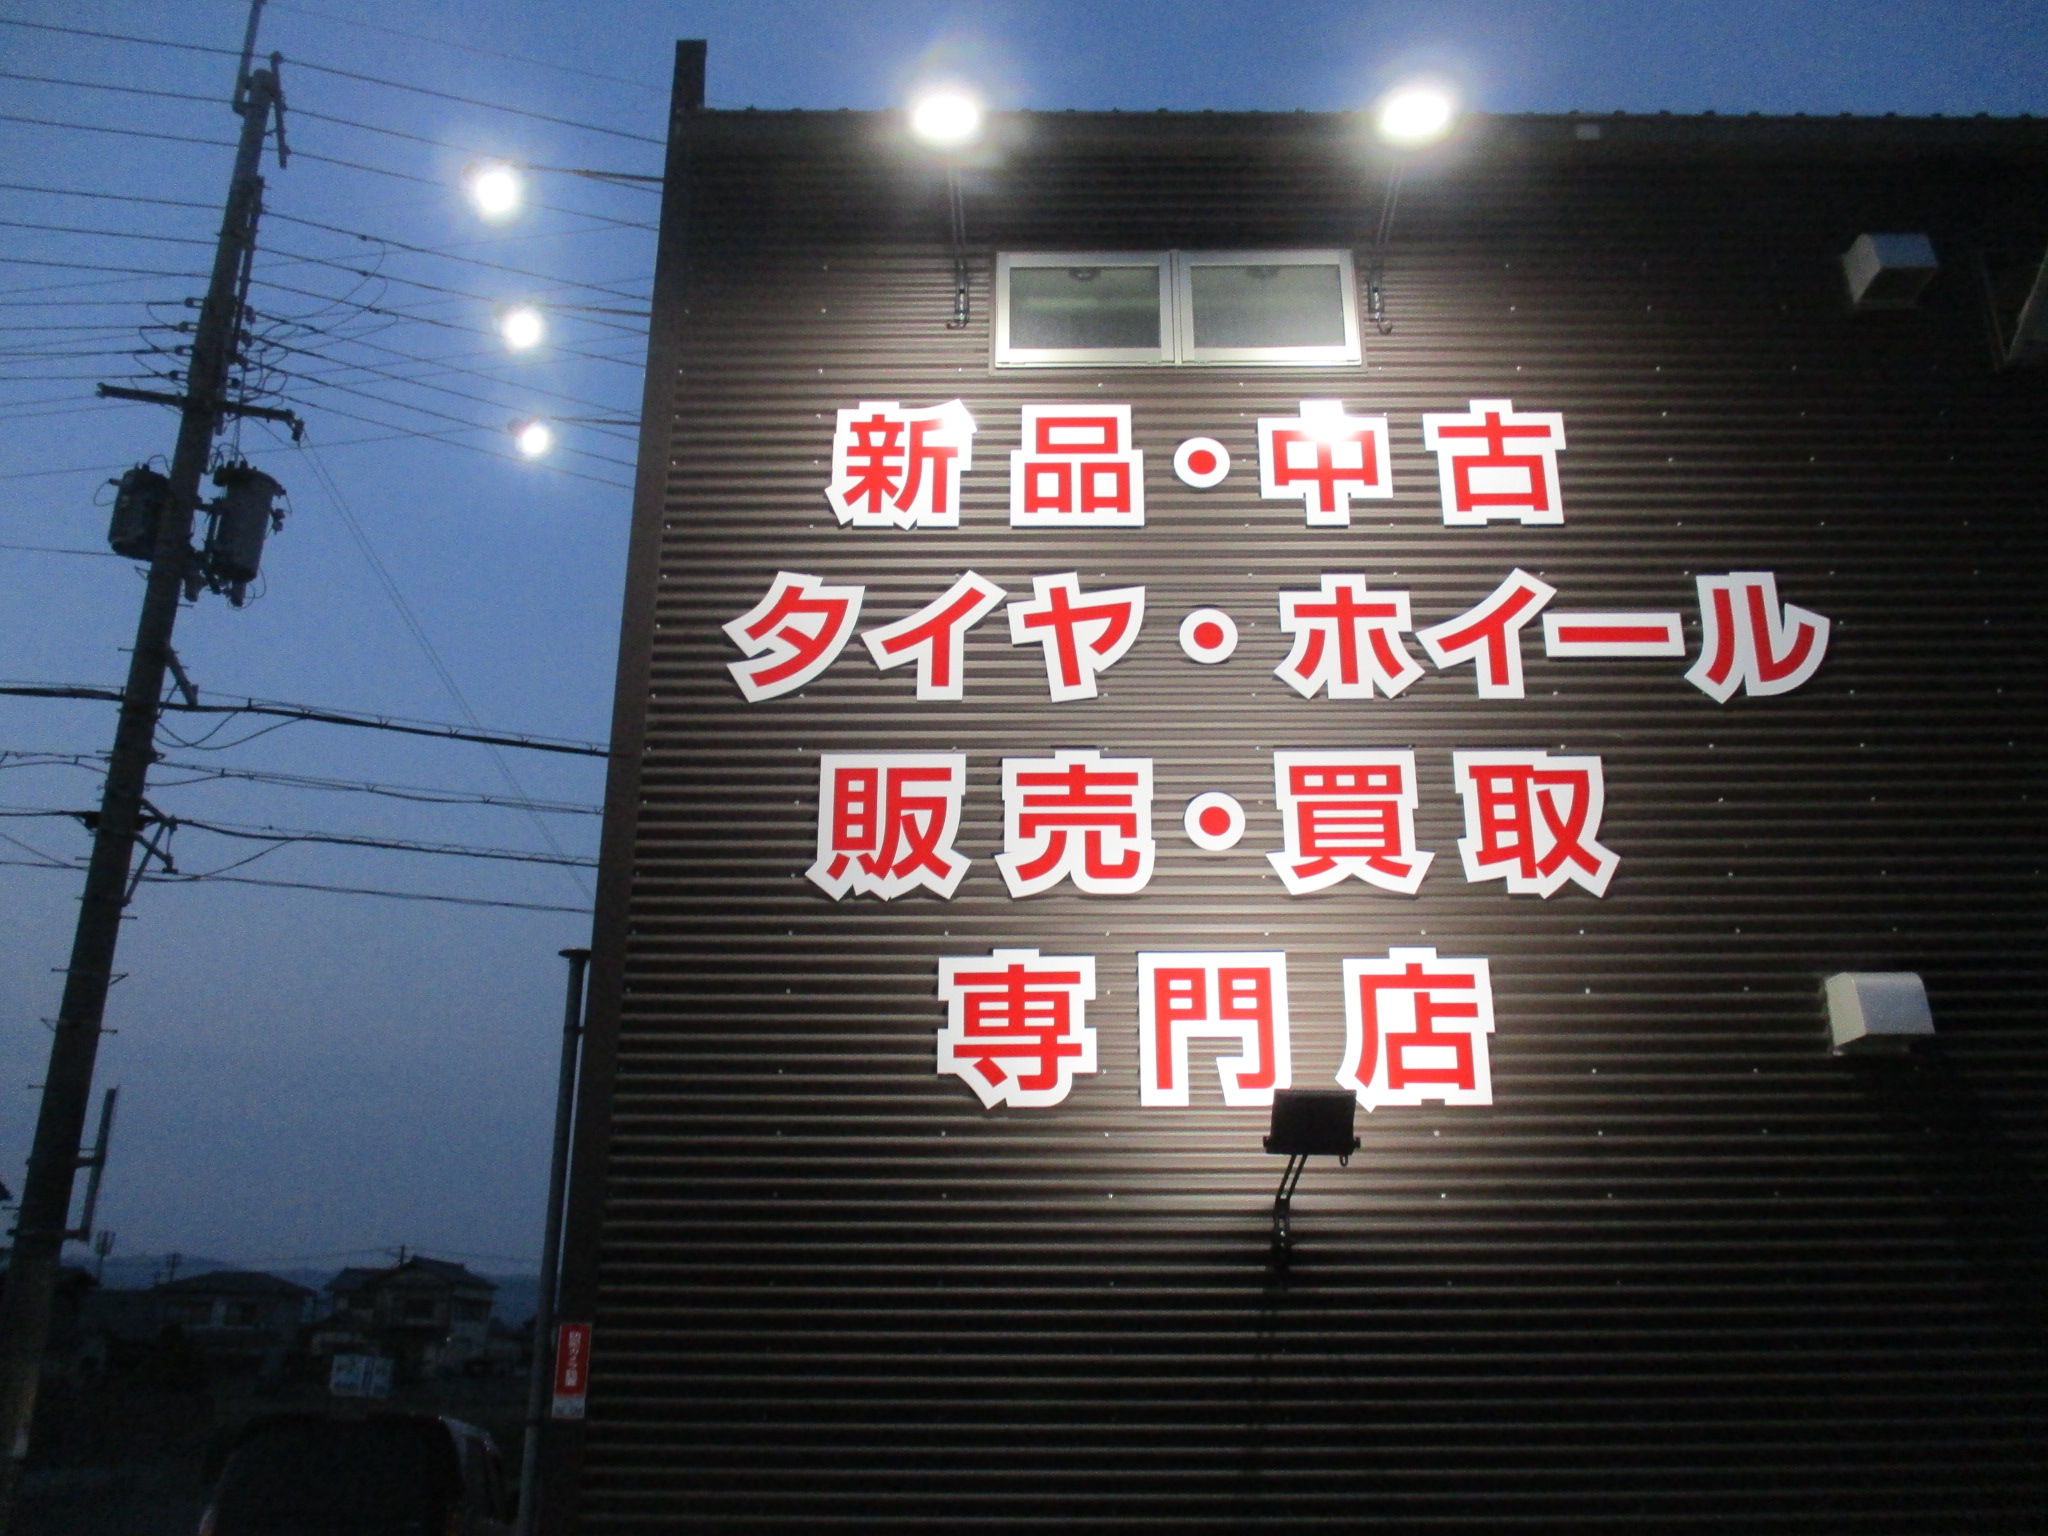 新看板☆LED照明☆完成しました☆ | 和歌山、泉南でタイヤを探すならタイヤショップ・インター